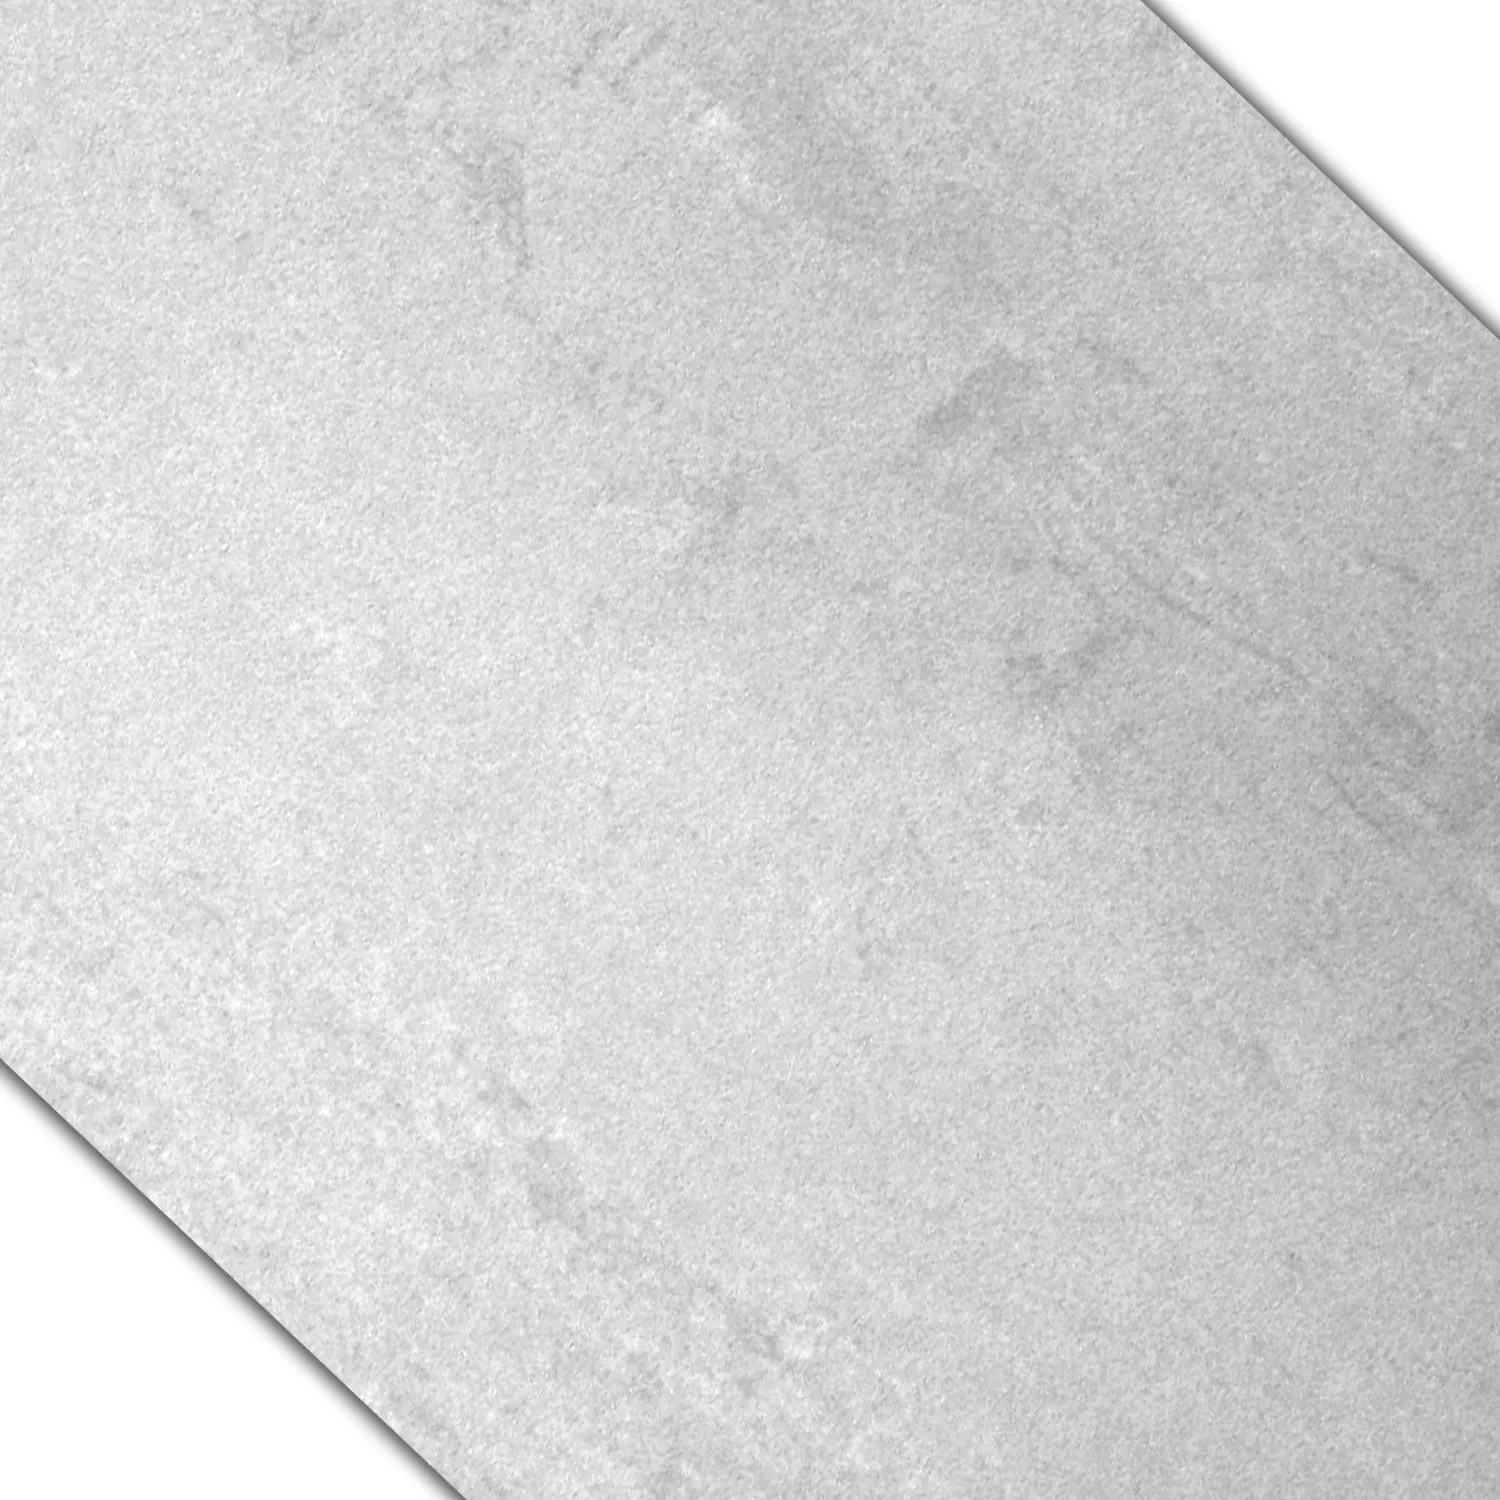 Sample Floor Tiles Madeira White Semi Polished 60x60cm